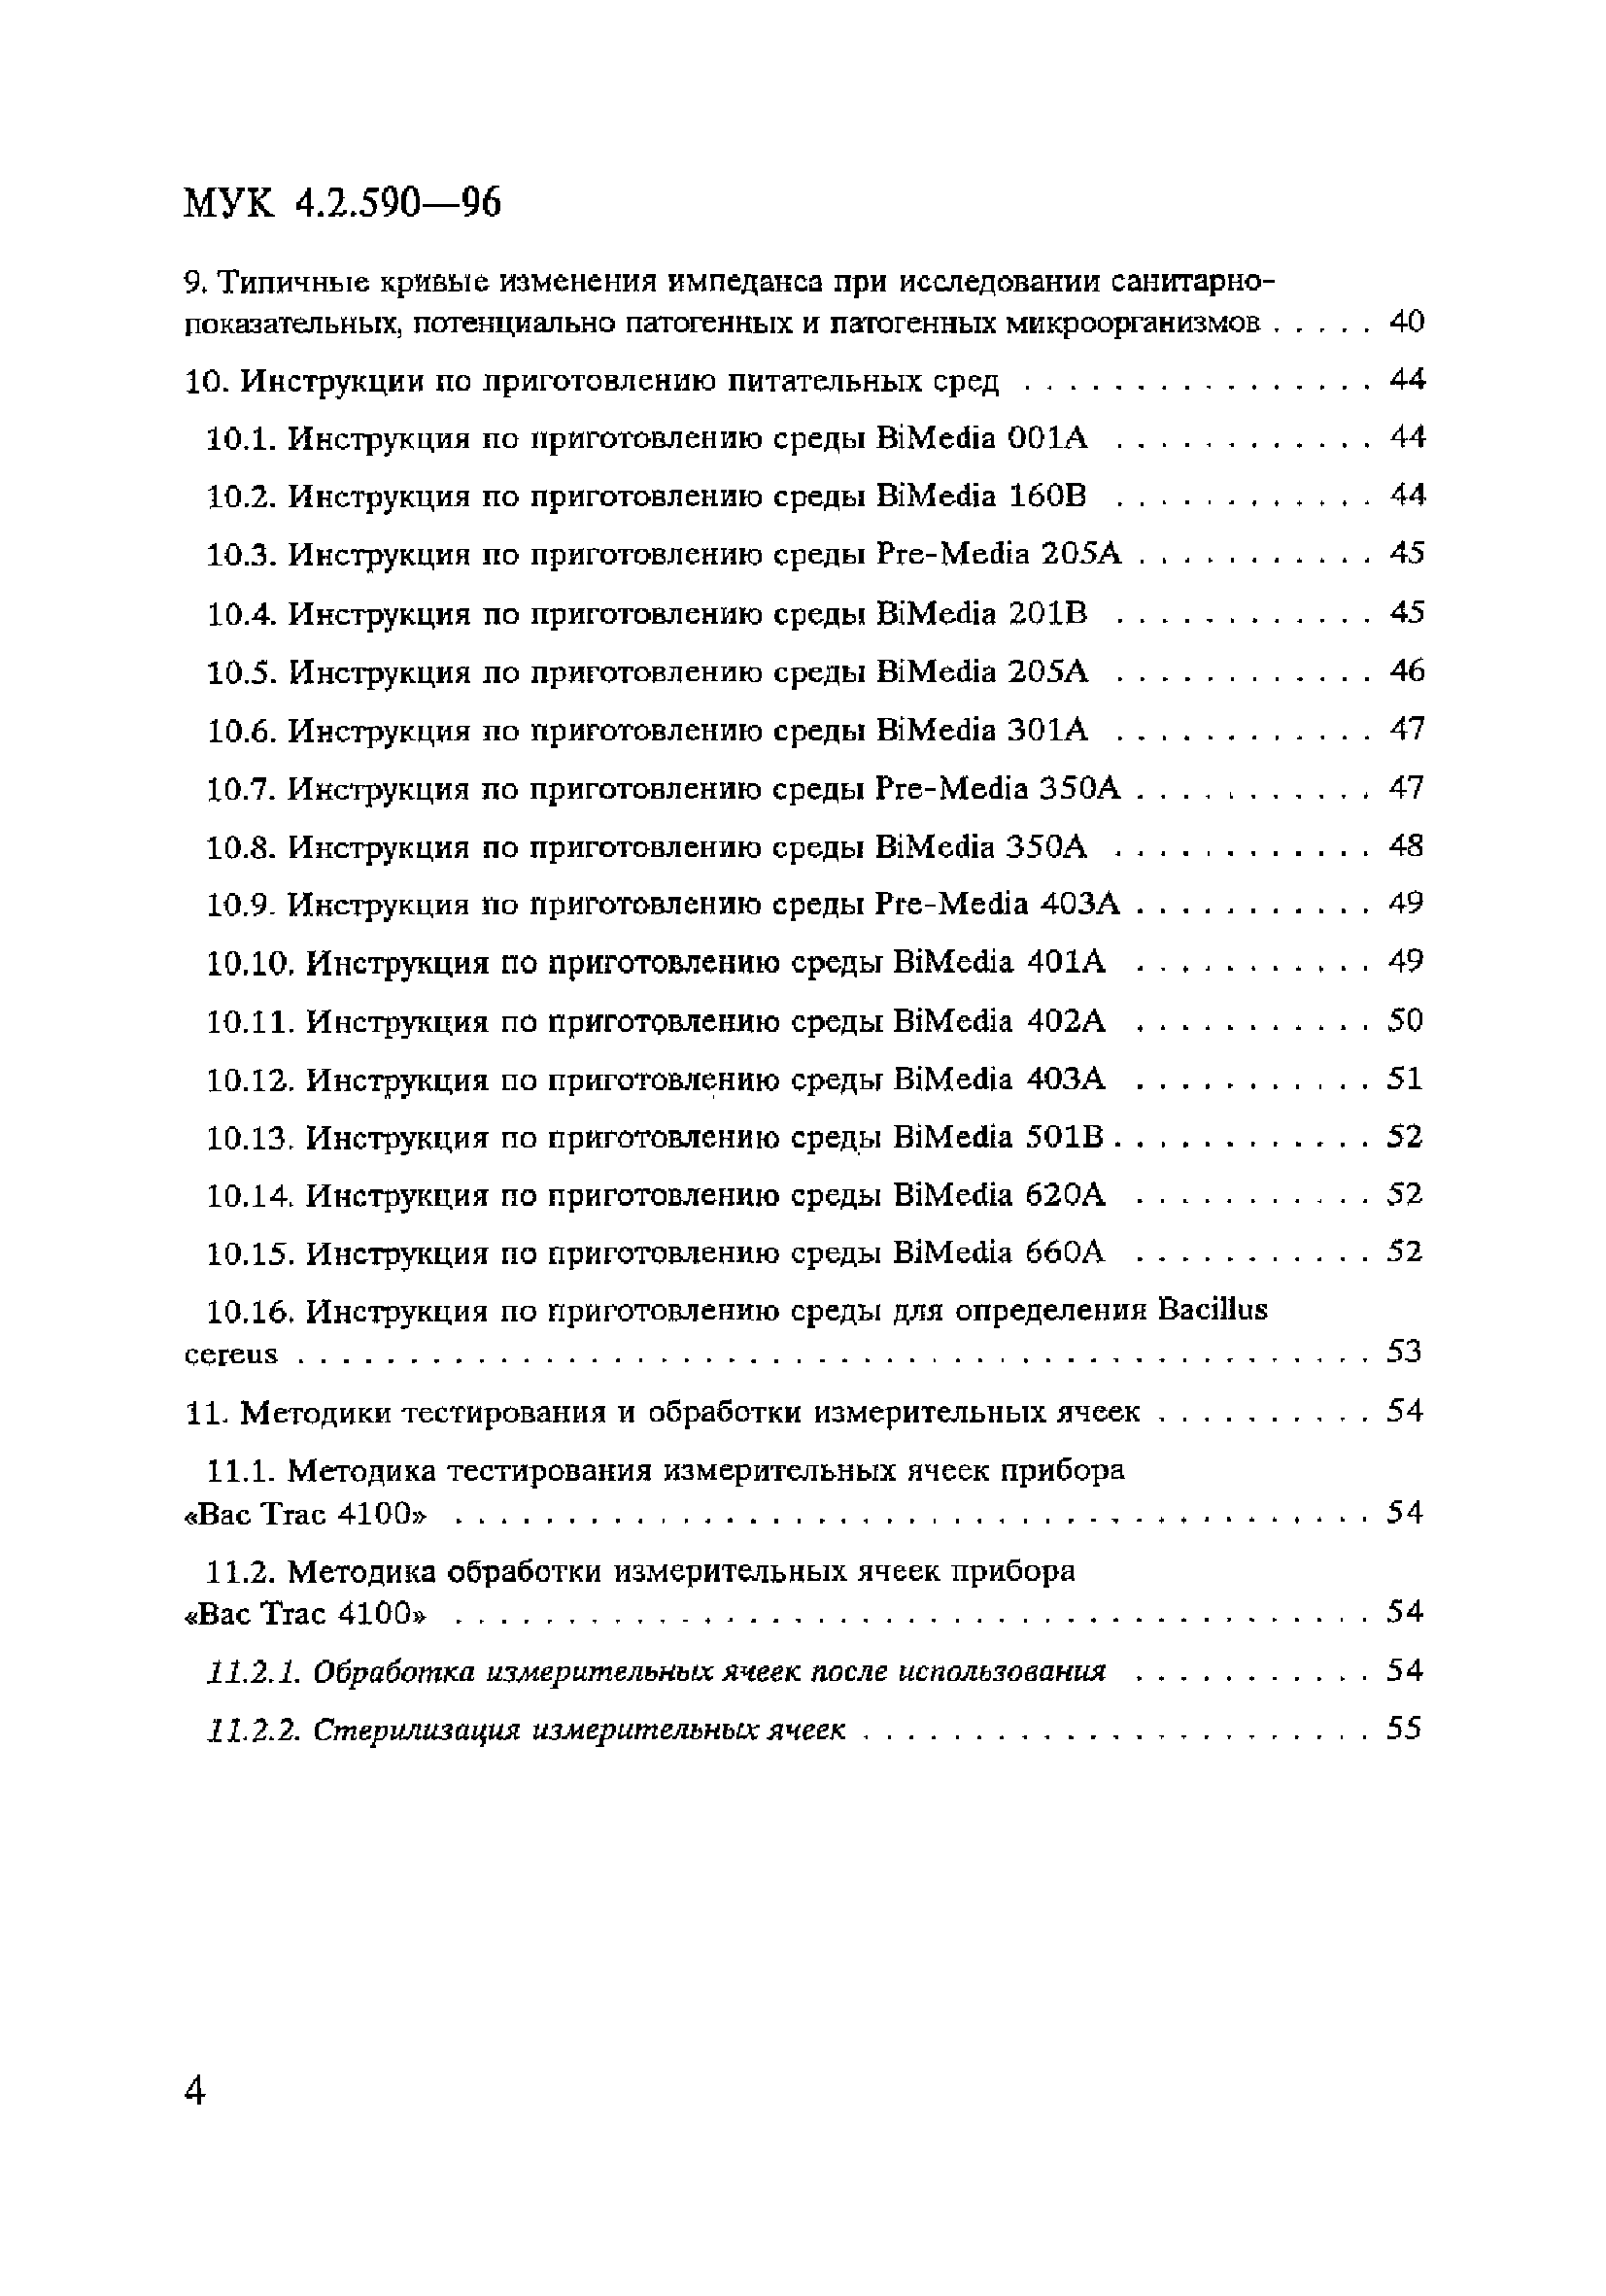 МУК 4.2.590-96